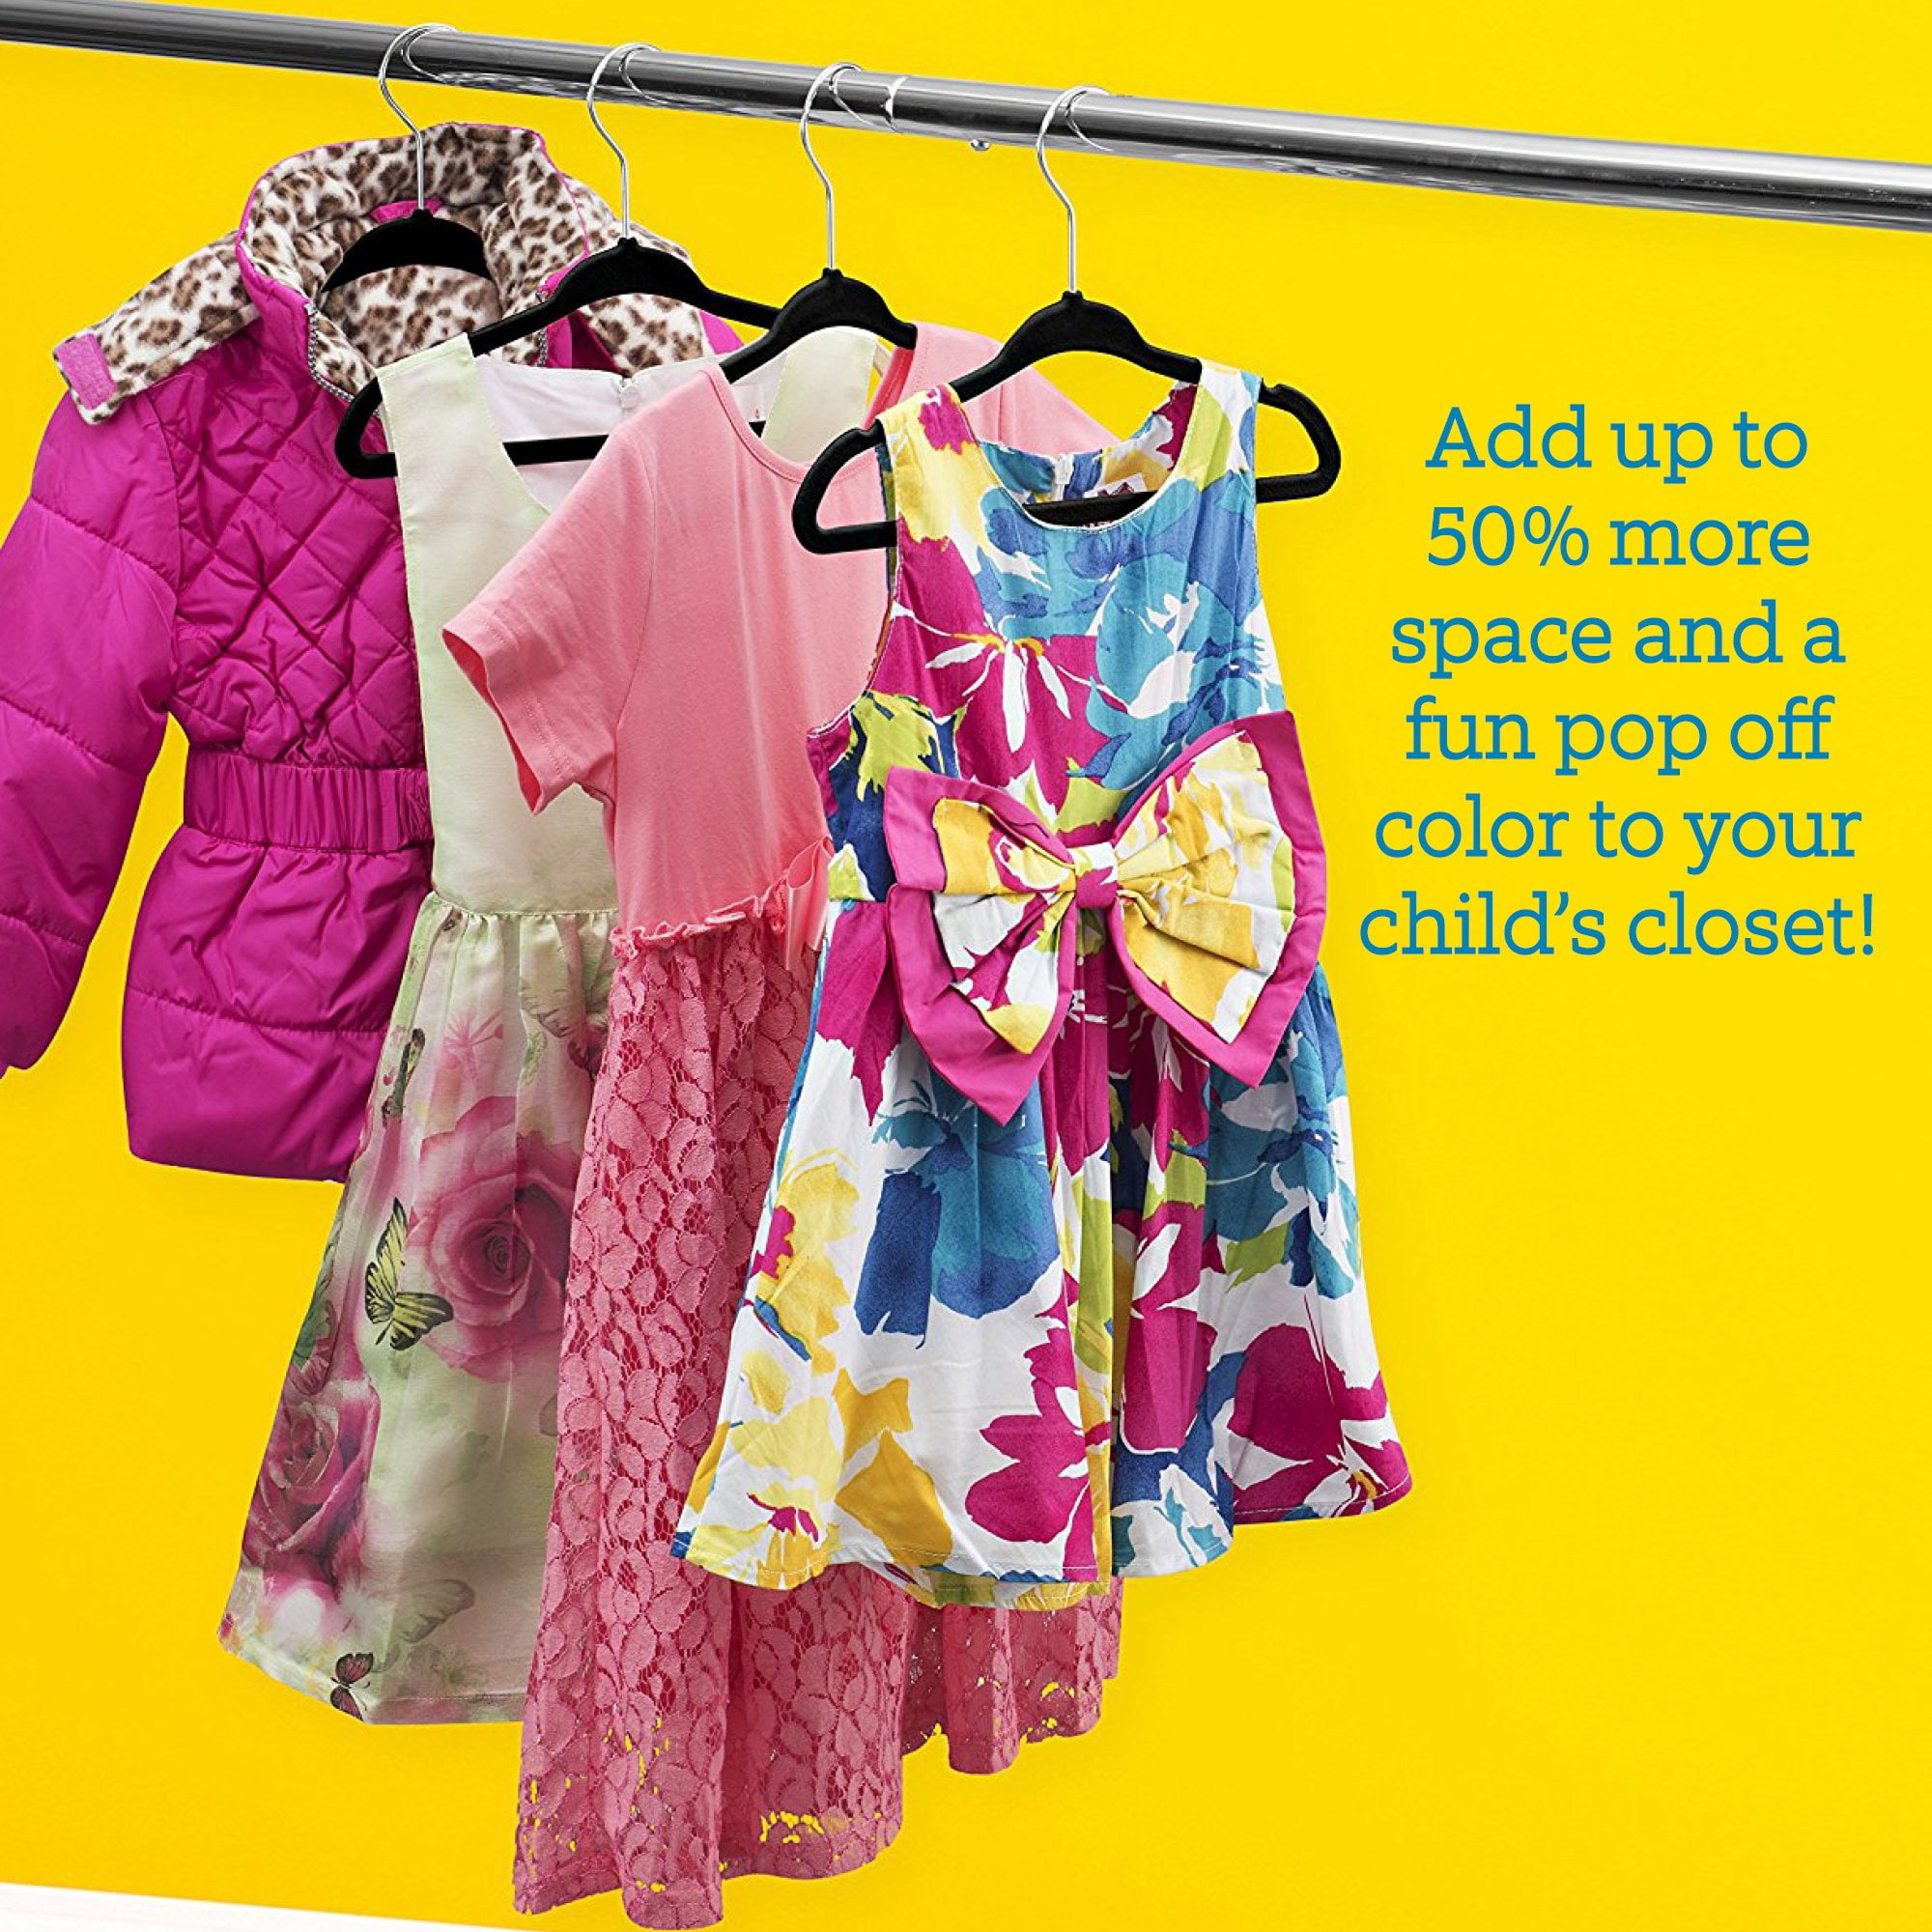  JIUXCF Kids Hangers (12.8” - 50 Pack), Non Slip Velvet Small  Hangers, Ultra Slim Space Saving Little Girl Hanger - 360° Swivel Hook,  Cascade Design, Durable & Cute Baby/Toddler Hangers（Pink） 